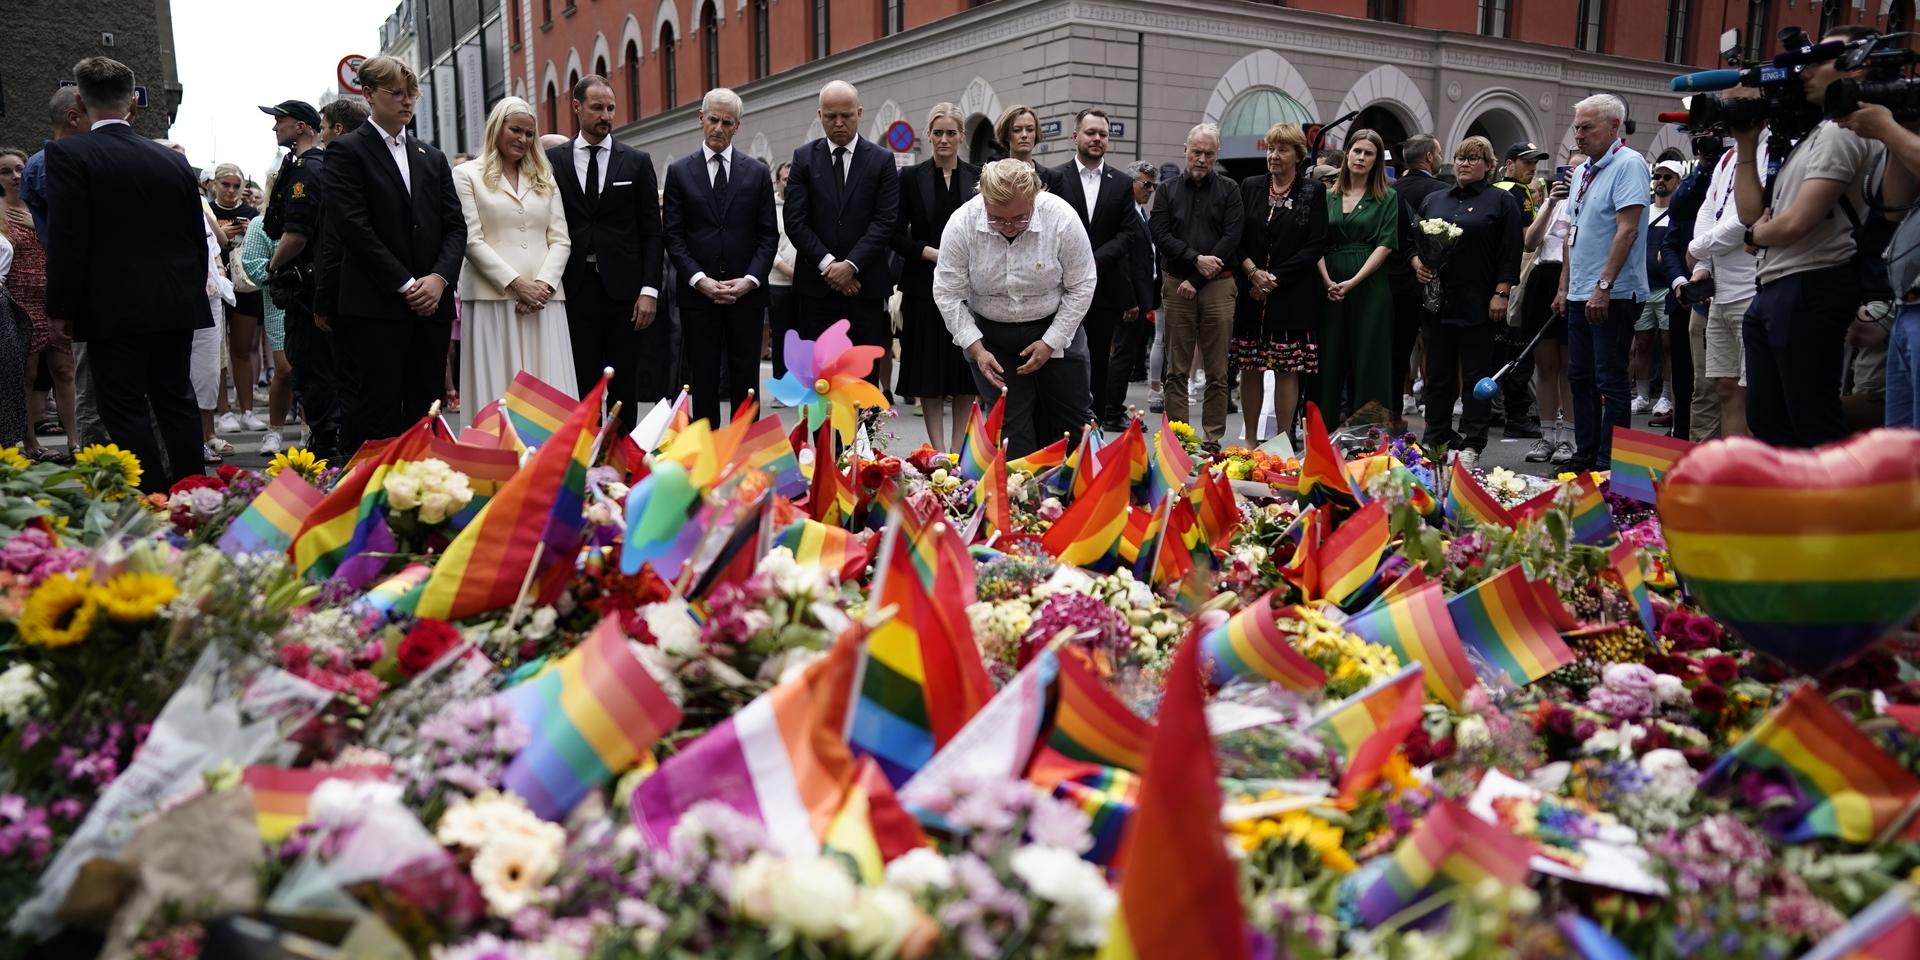 Norges statsminister Jonas Gahr Støre och kronprinsessan Mette-Marit och kronprins Haakon med sonen Sverre Magnus lämnar blommor på platsen där människor har samlats i Oslo efter att två personer dödades i en skjutning.